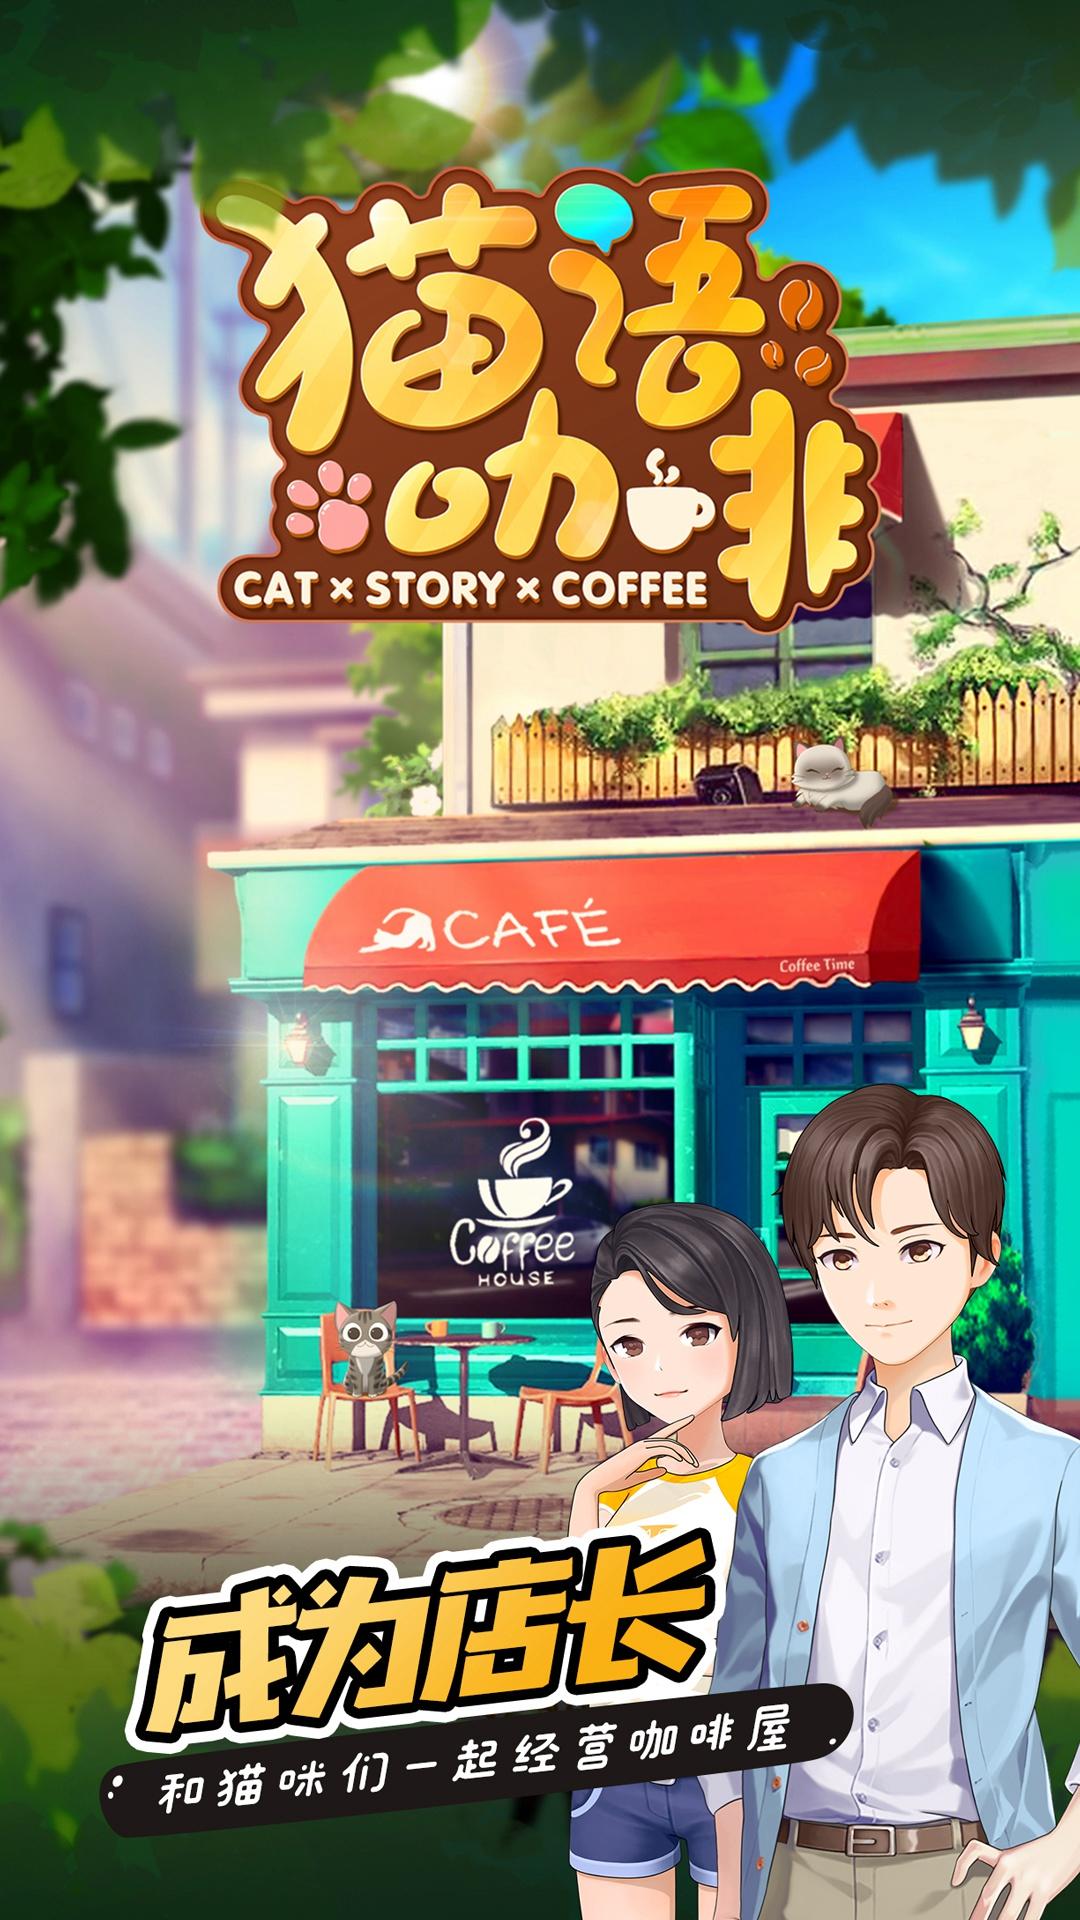 Screenshot 1 of café gato 1.4.0